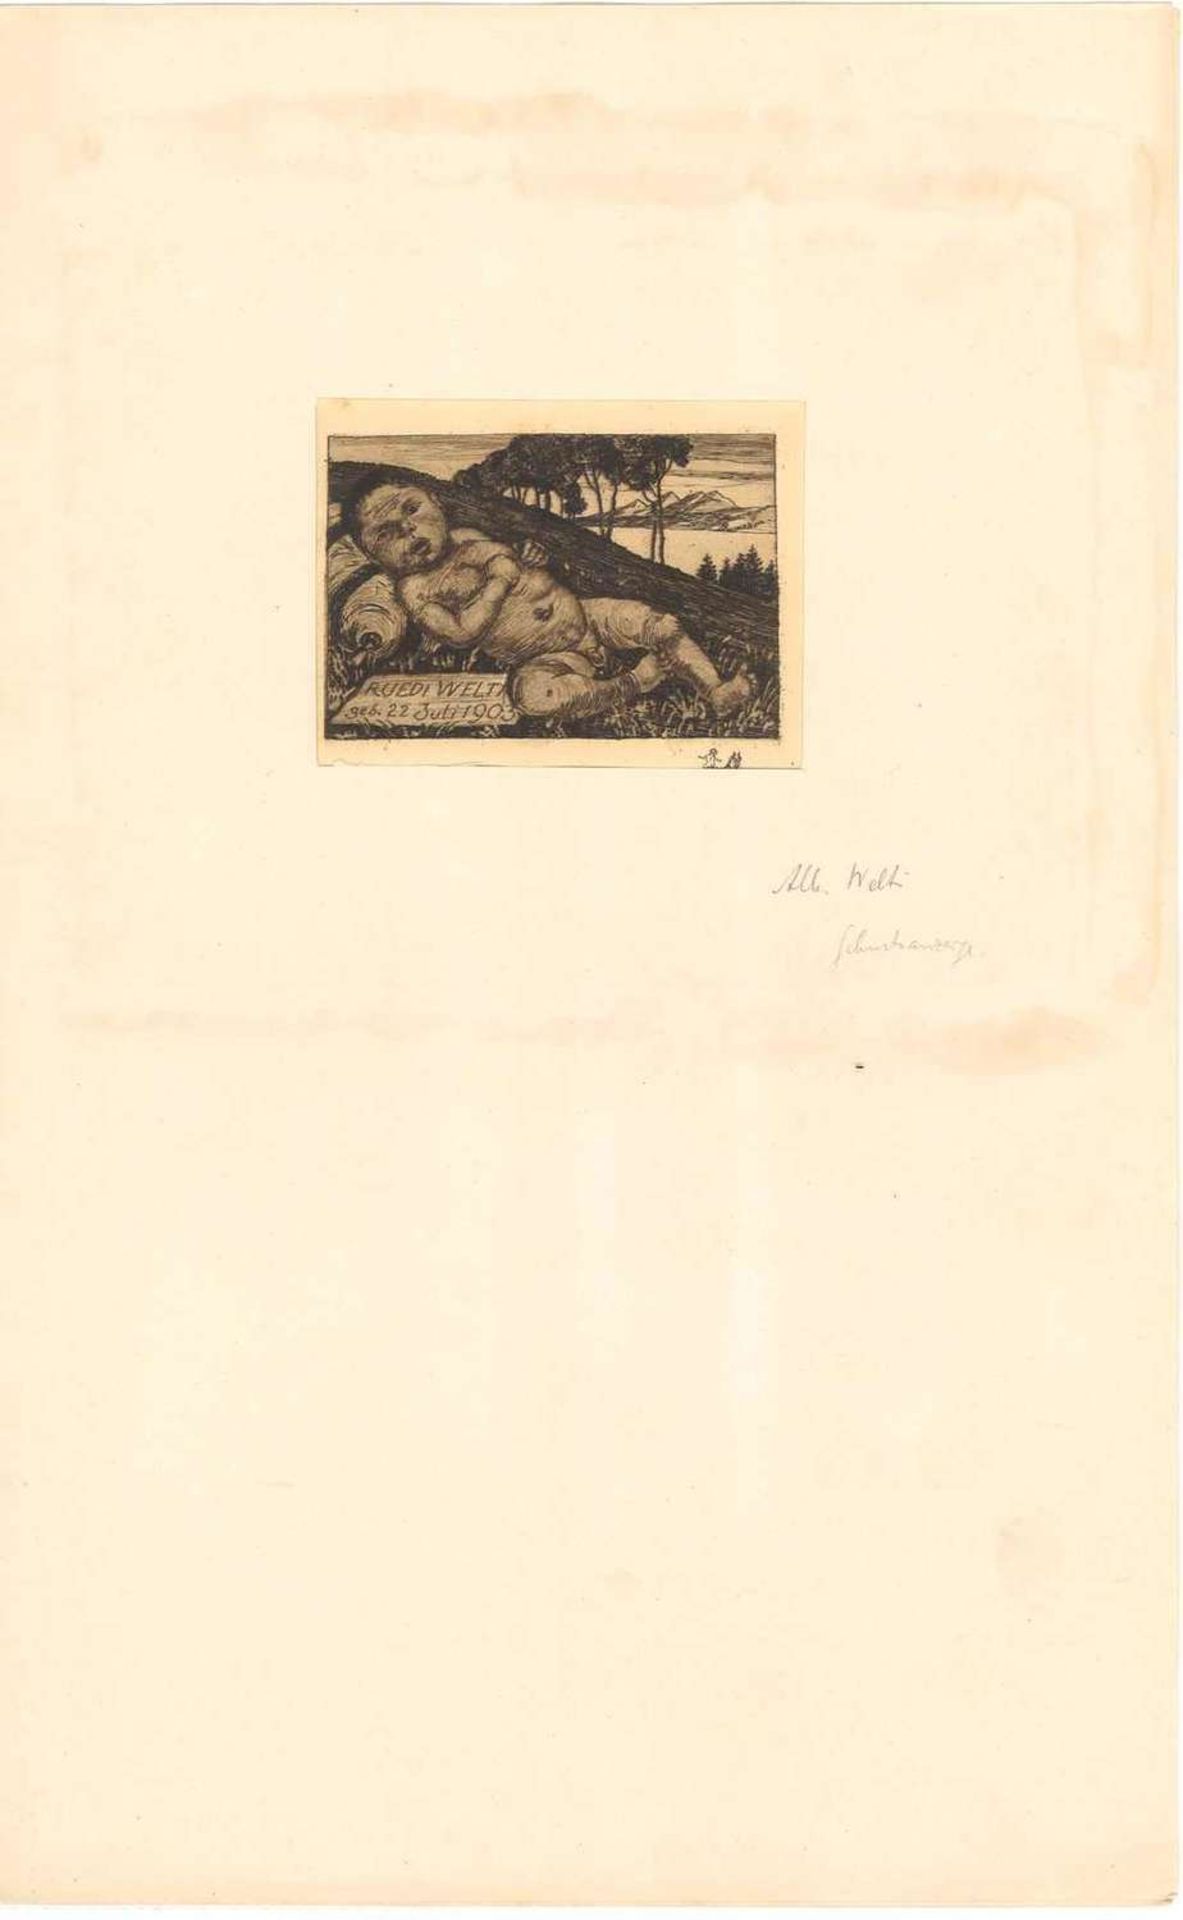 Albert Welti (1862-1912), Radierung, "Ruedi Welti geb. 22. Juli 1903", rechts unten signiert. Maße: